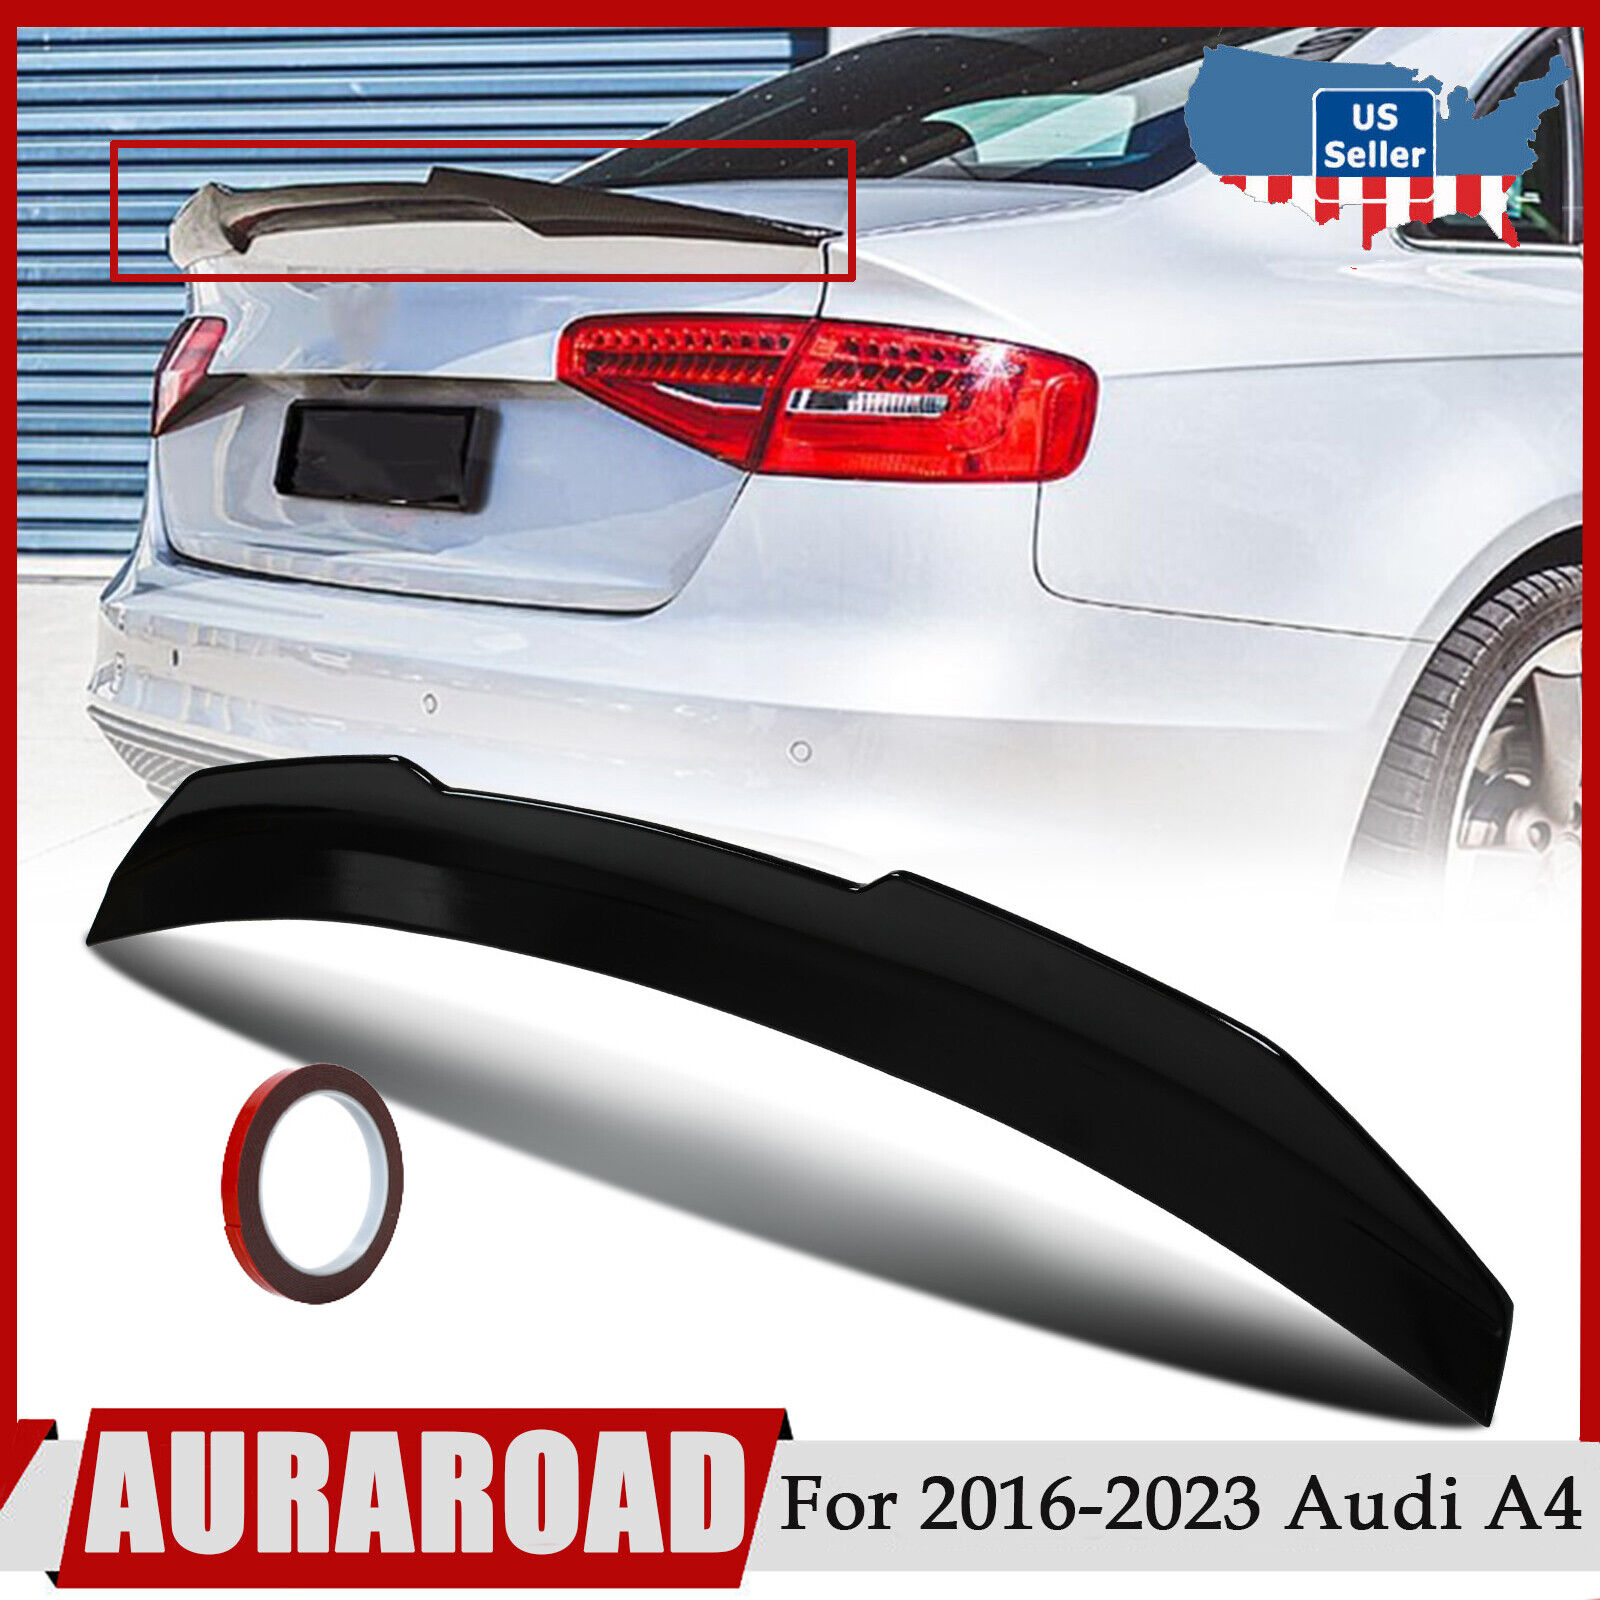 Rear Trunk Spoiler For 2013-16 Audi A4 B8.5 Sedan Highkick Duckbill Gloss Black